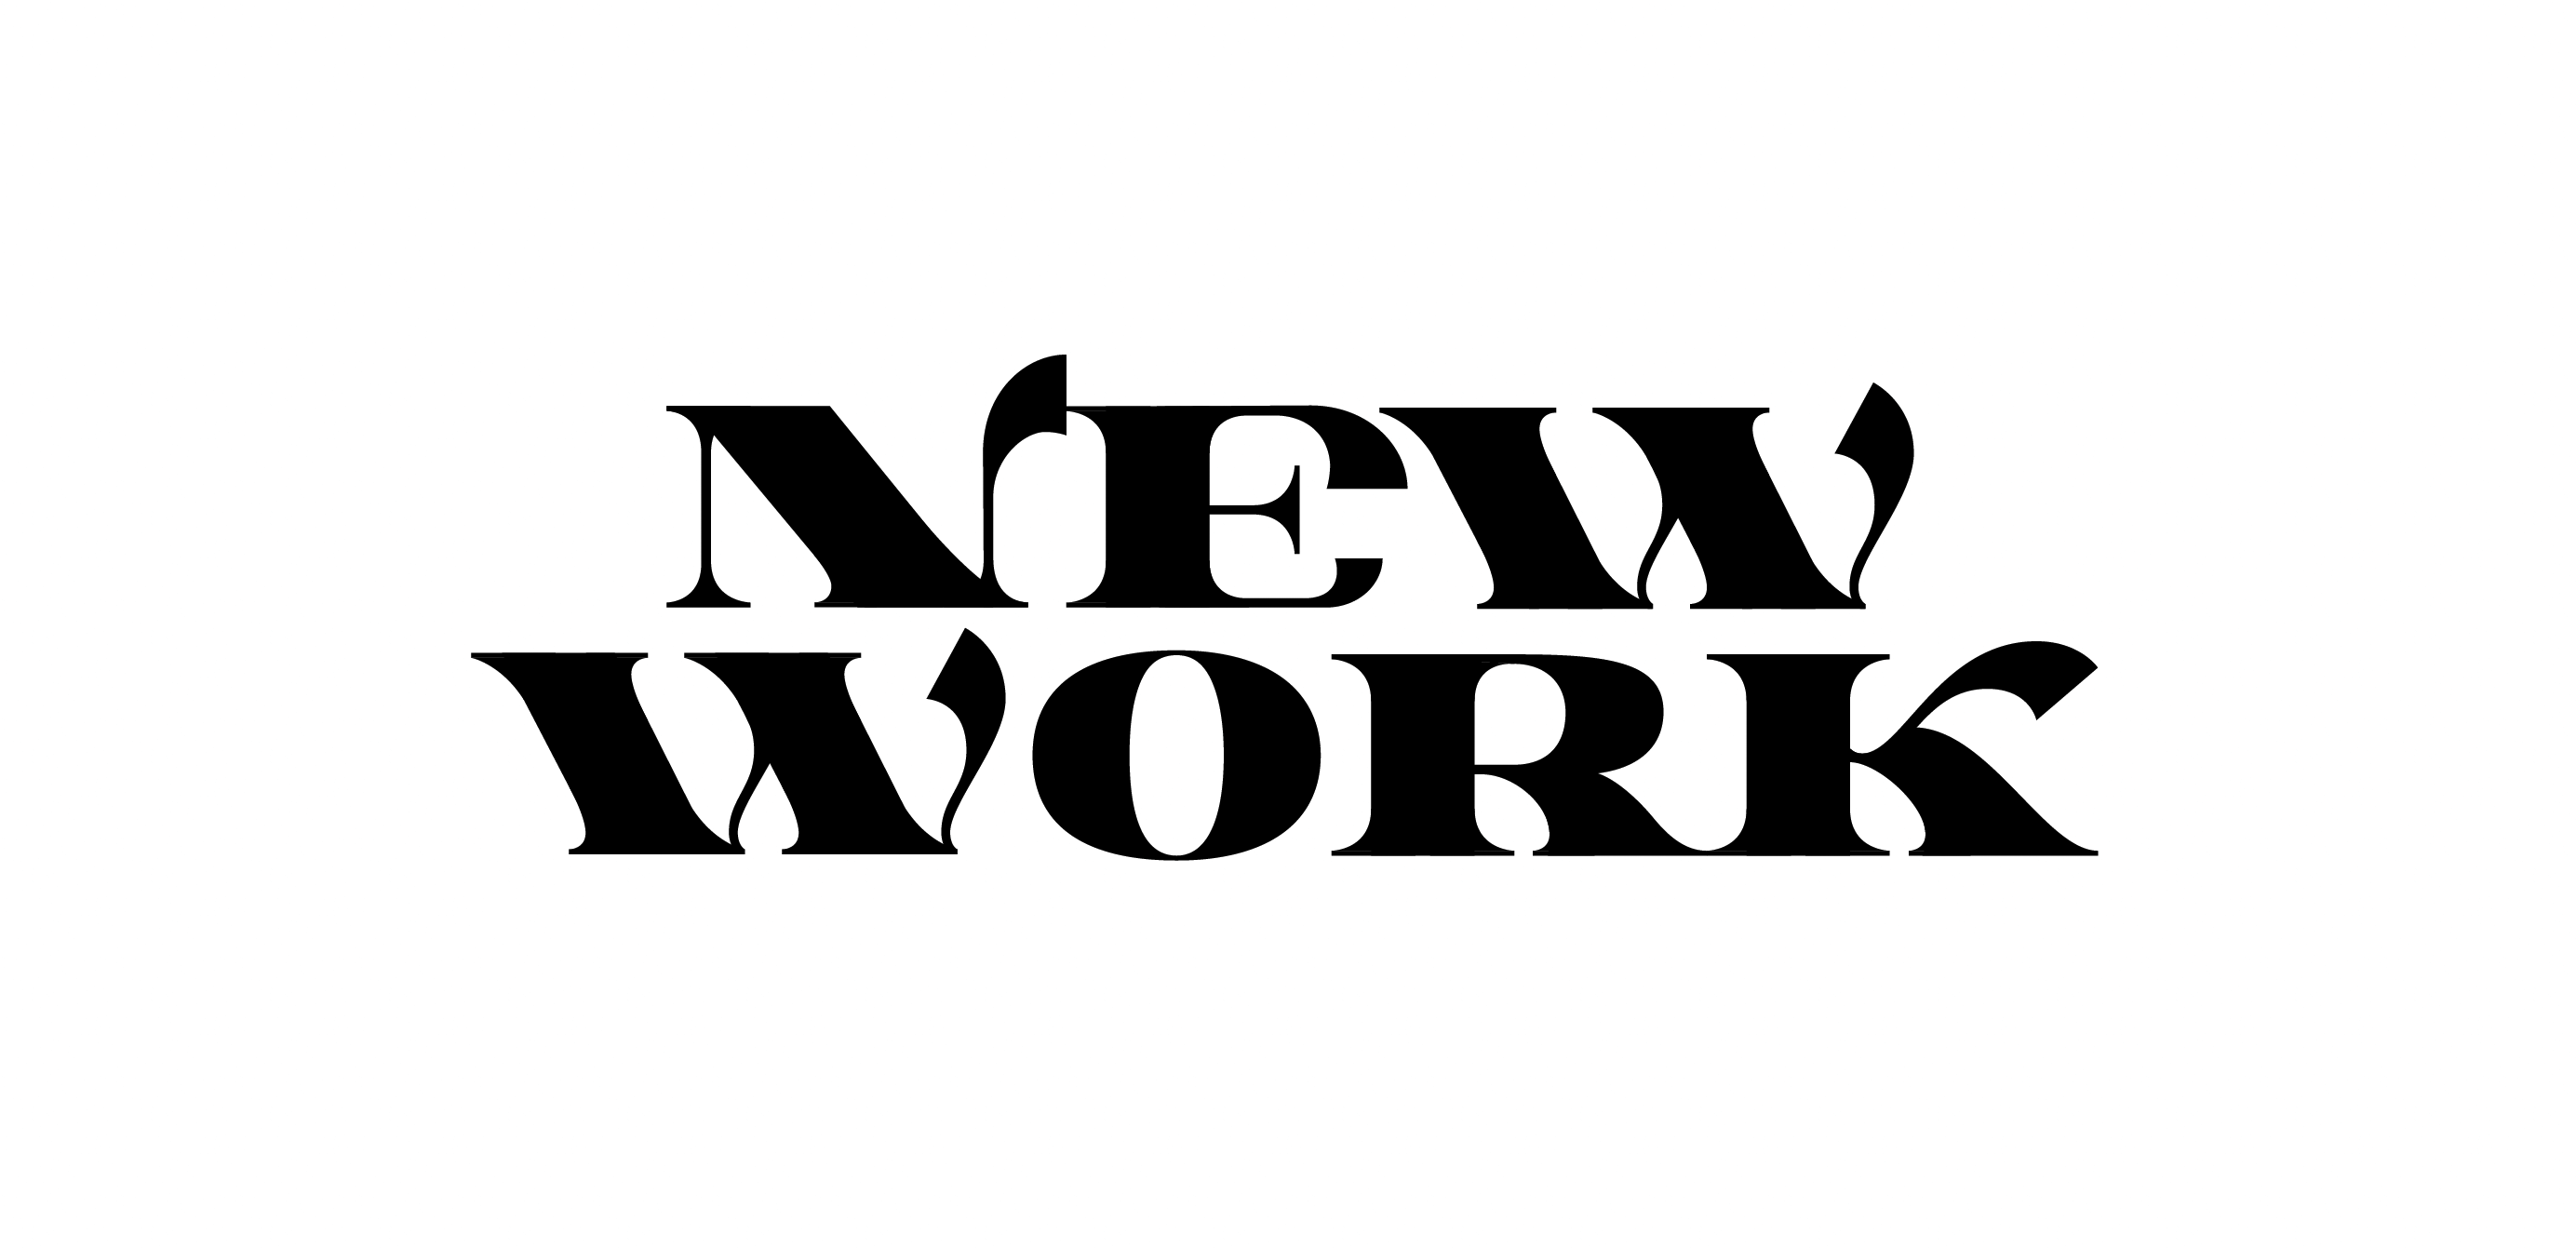 Ein Schriftzug (schwarz auf weiß) mit dem englischen Wortlaut: “New Work” (Neue Arbeitswelt).